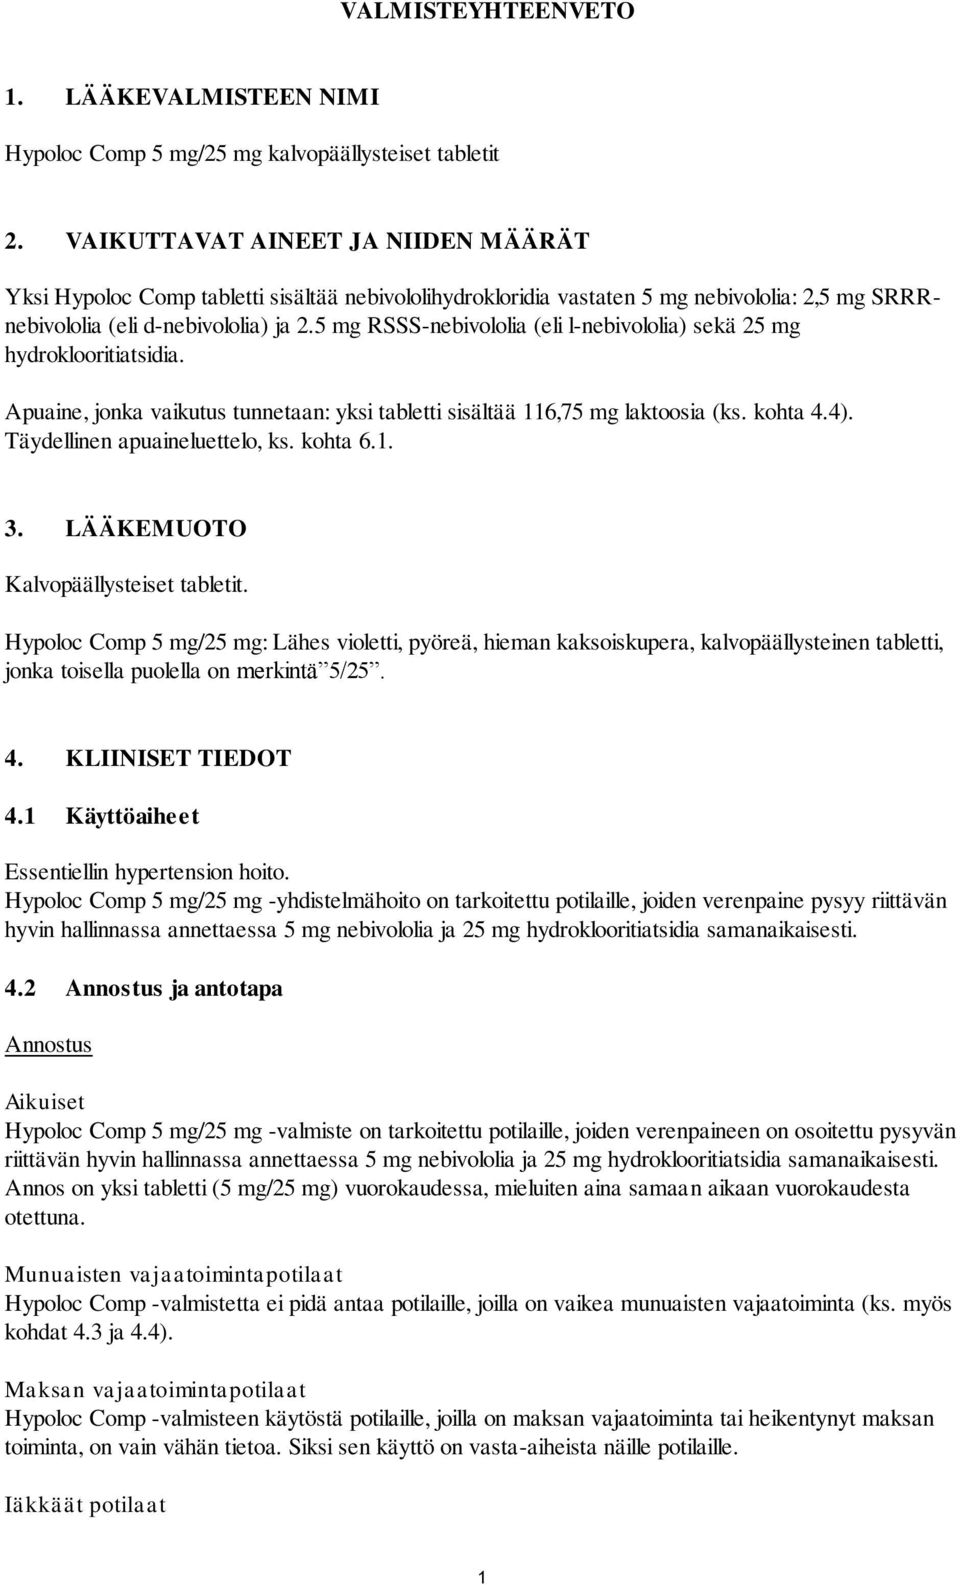 5 mg RSSS-nebivololia (eli l-nebivololia) sekä 25 mg hydroklooritiatsidia. Apuaine, jonka vaikutus tunnetaan: yksi tabletti sisältää 116,75 mg laktoosia (ks. kohta 4.4).